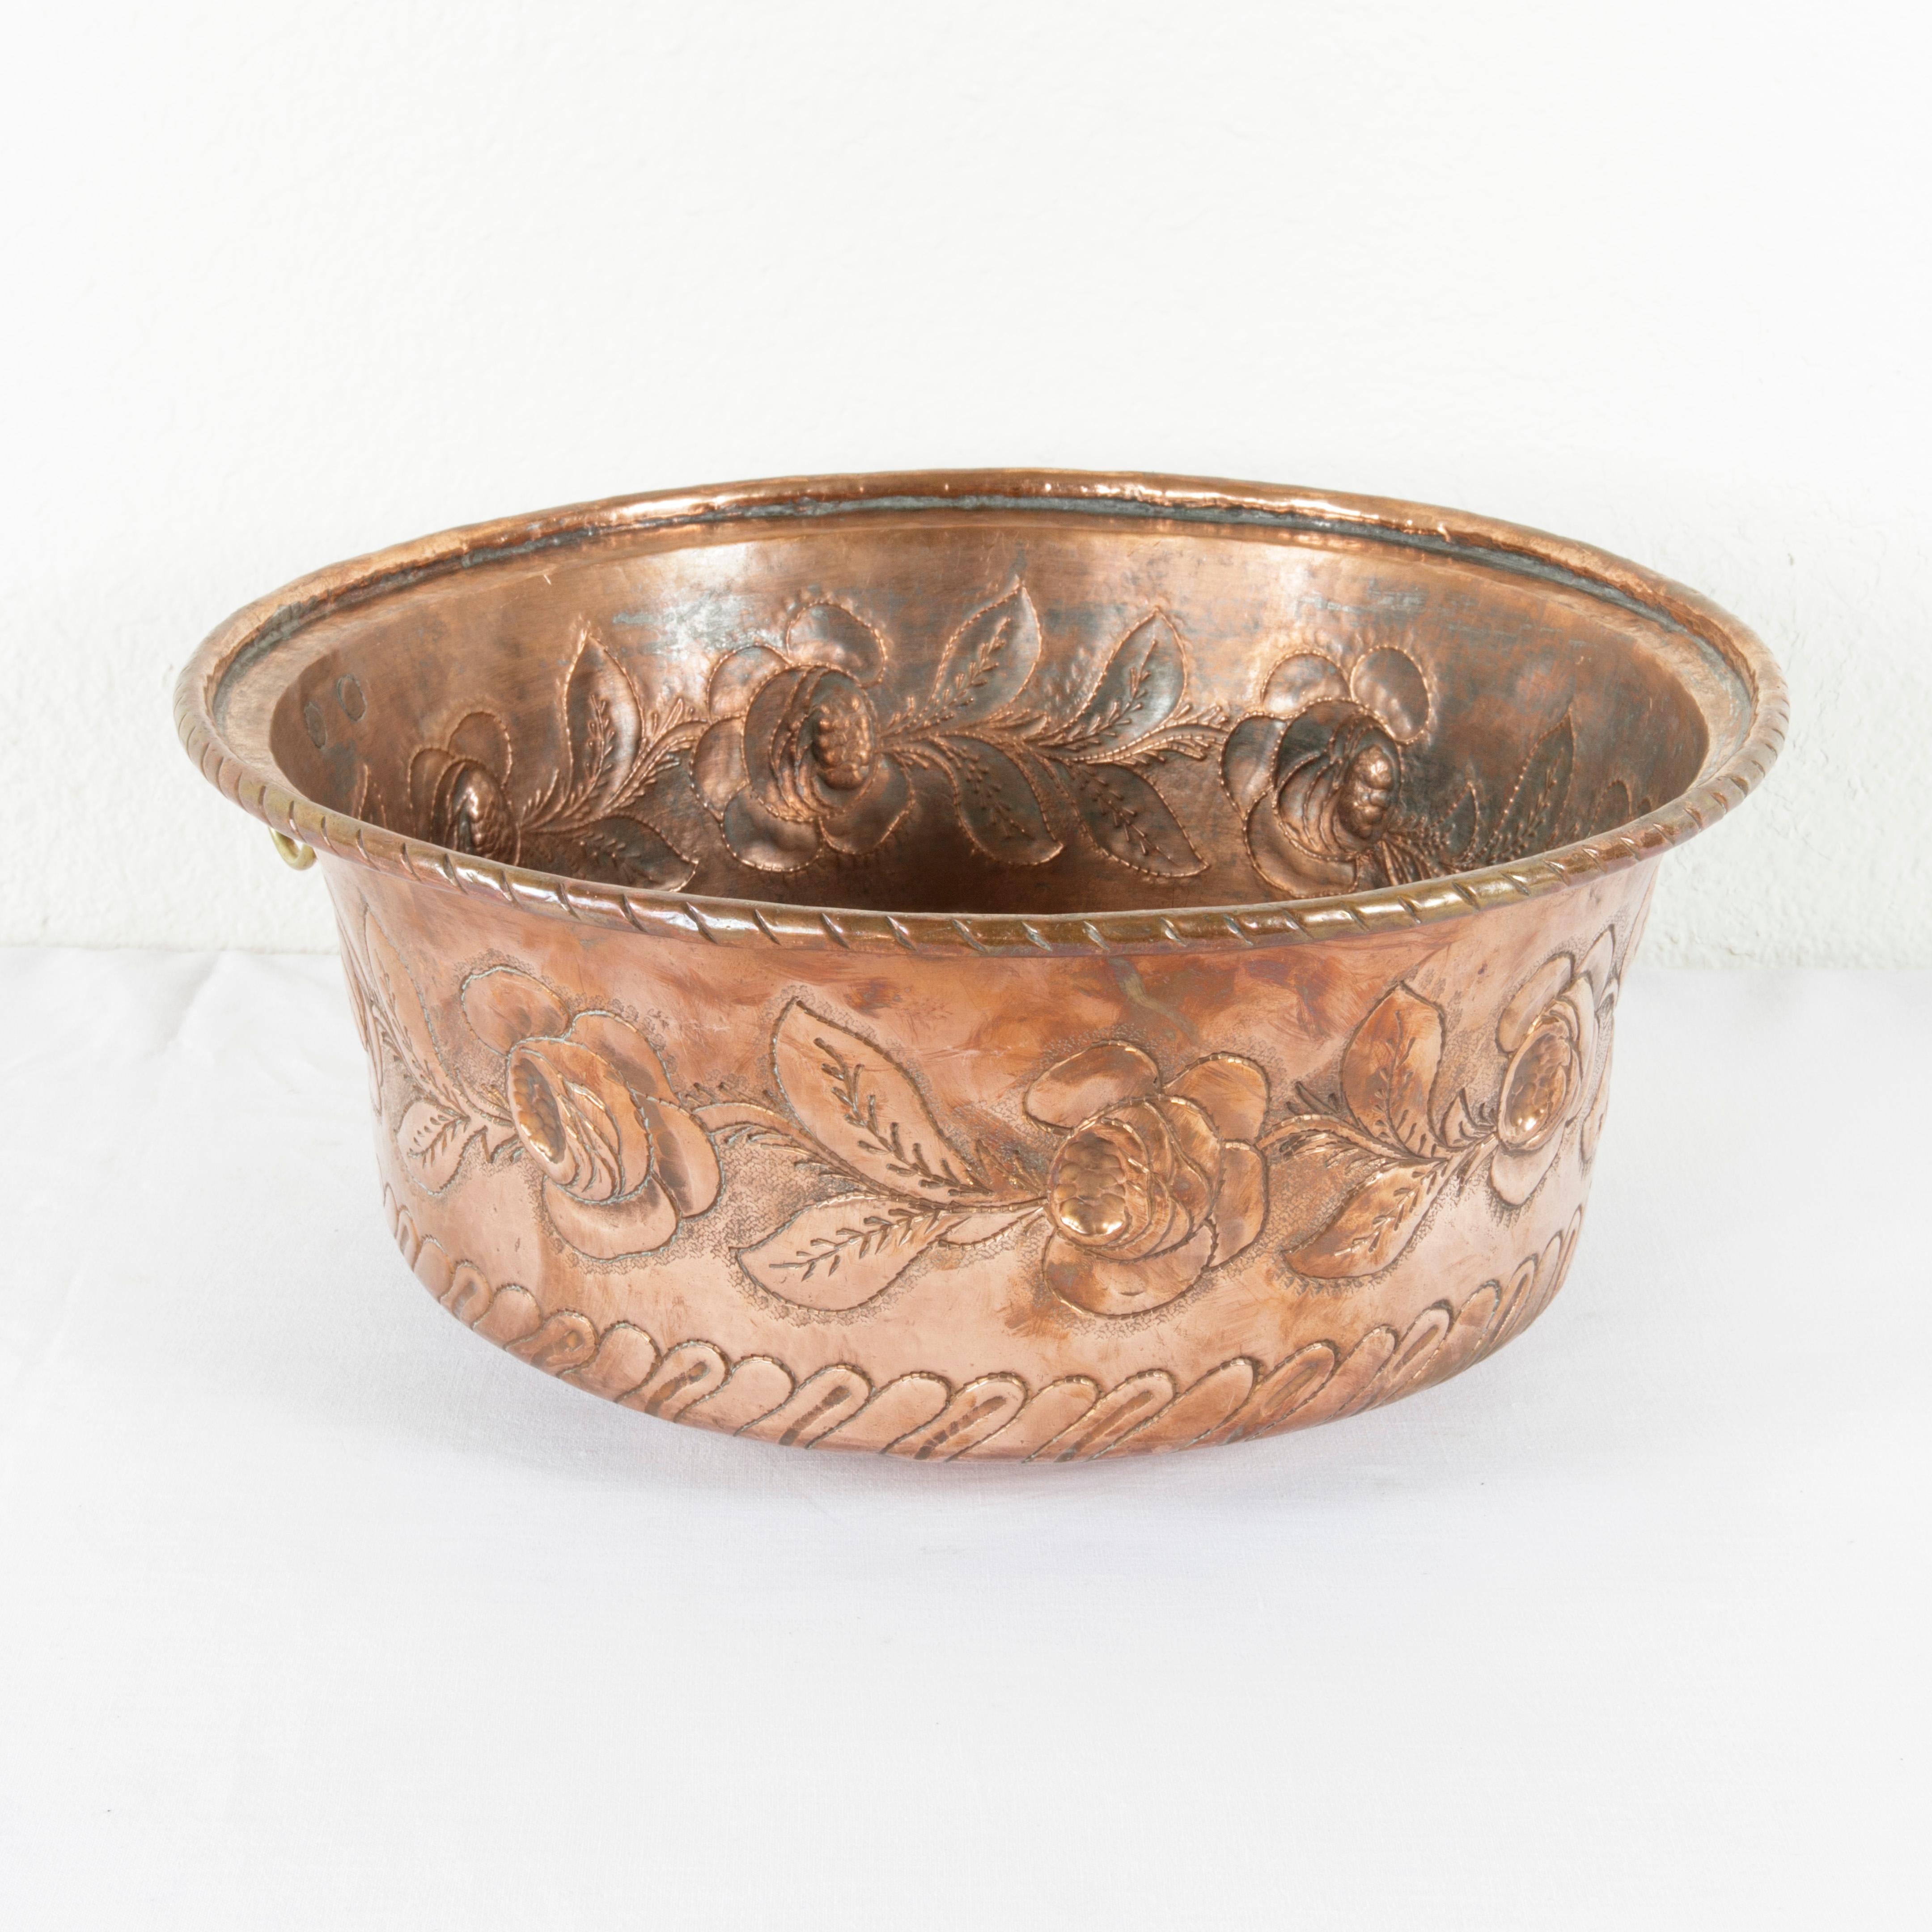 Repoussé Mid-19th Century French Hand Hammered Copper Repousse Cauldron, Bowl, Cachepot